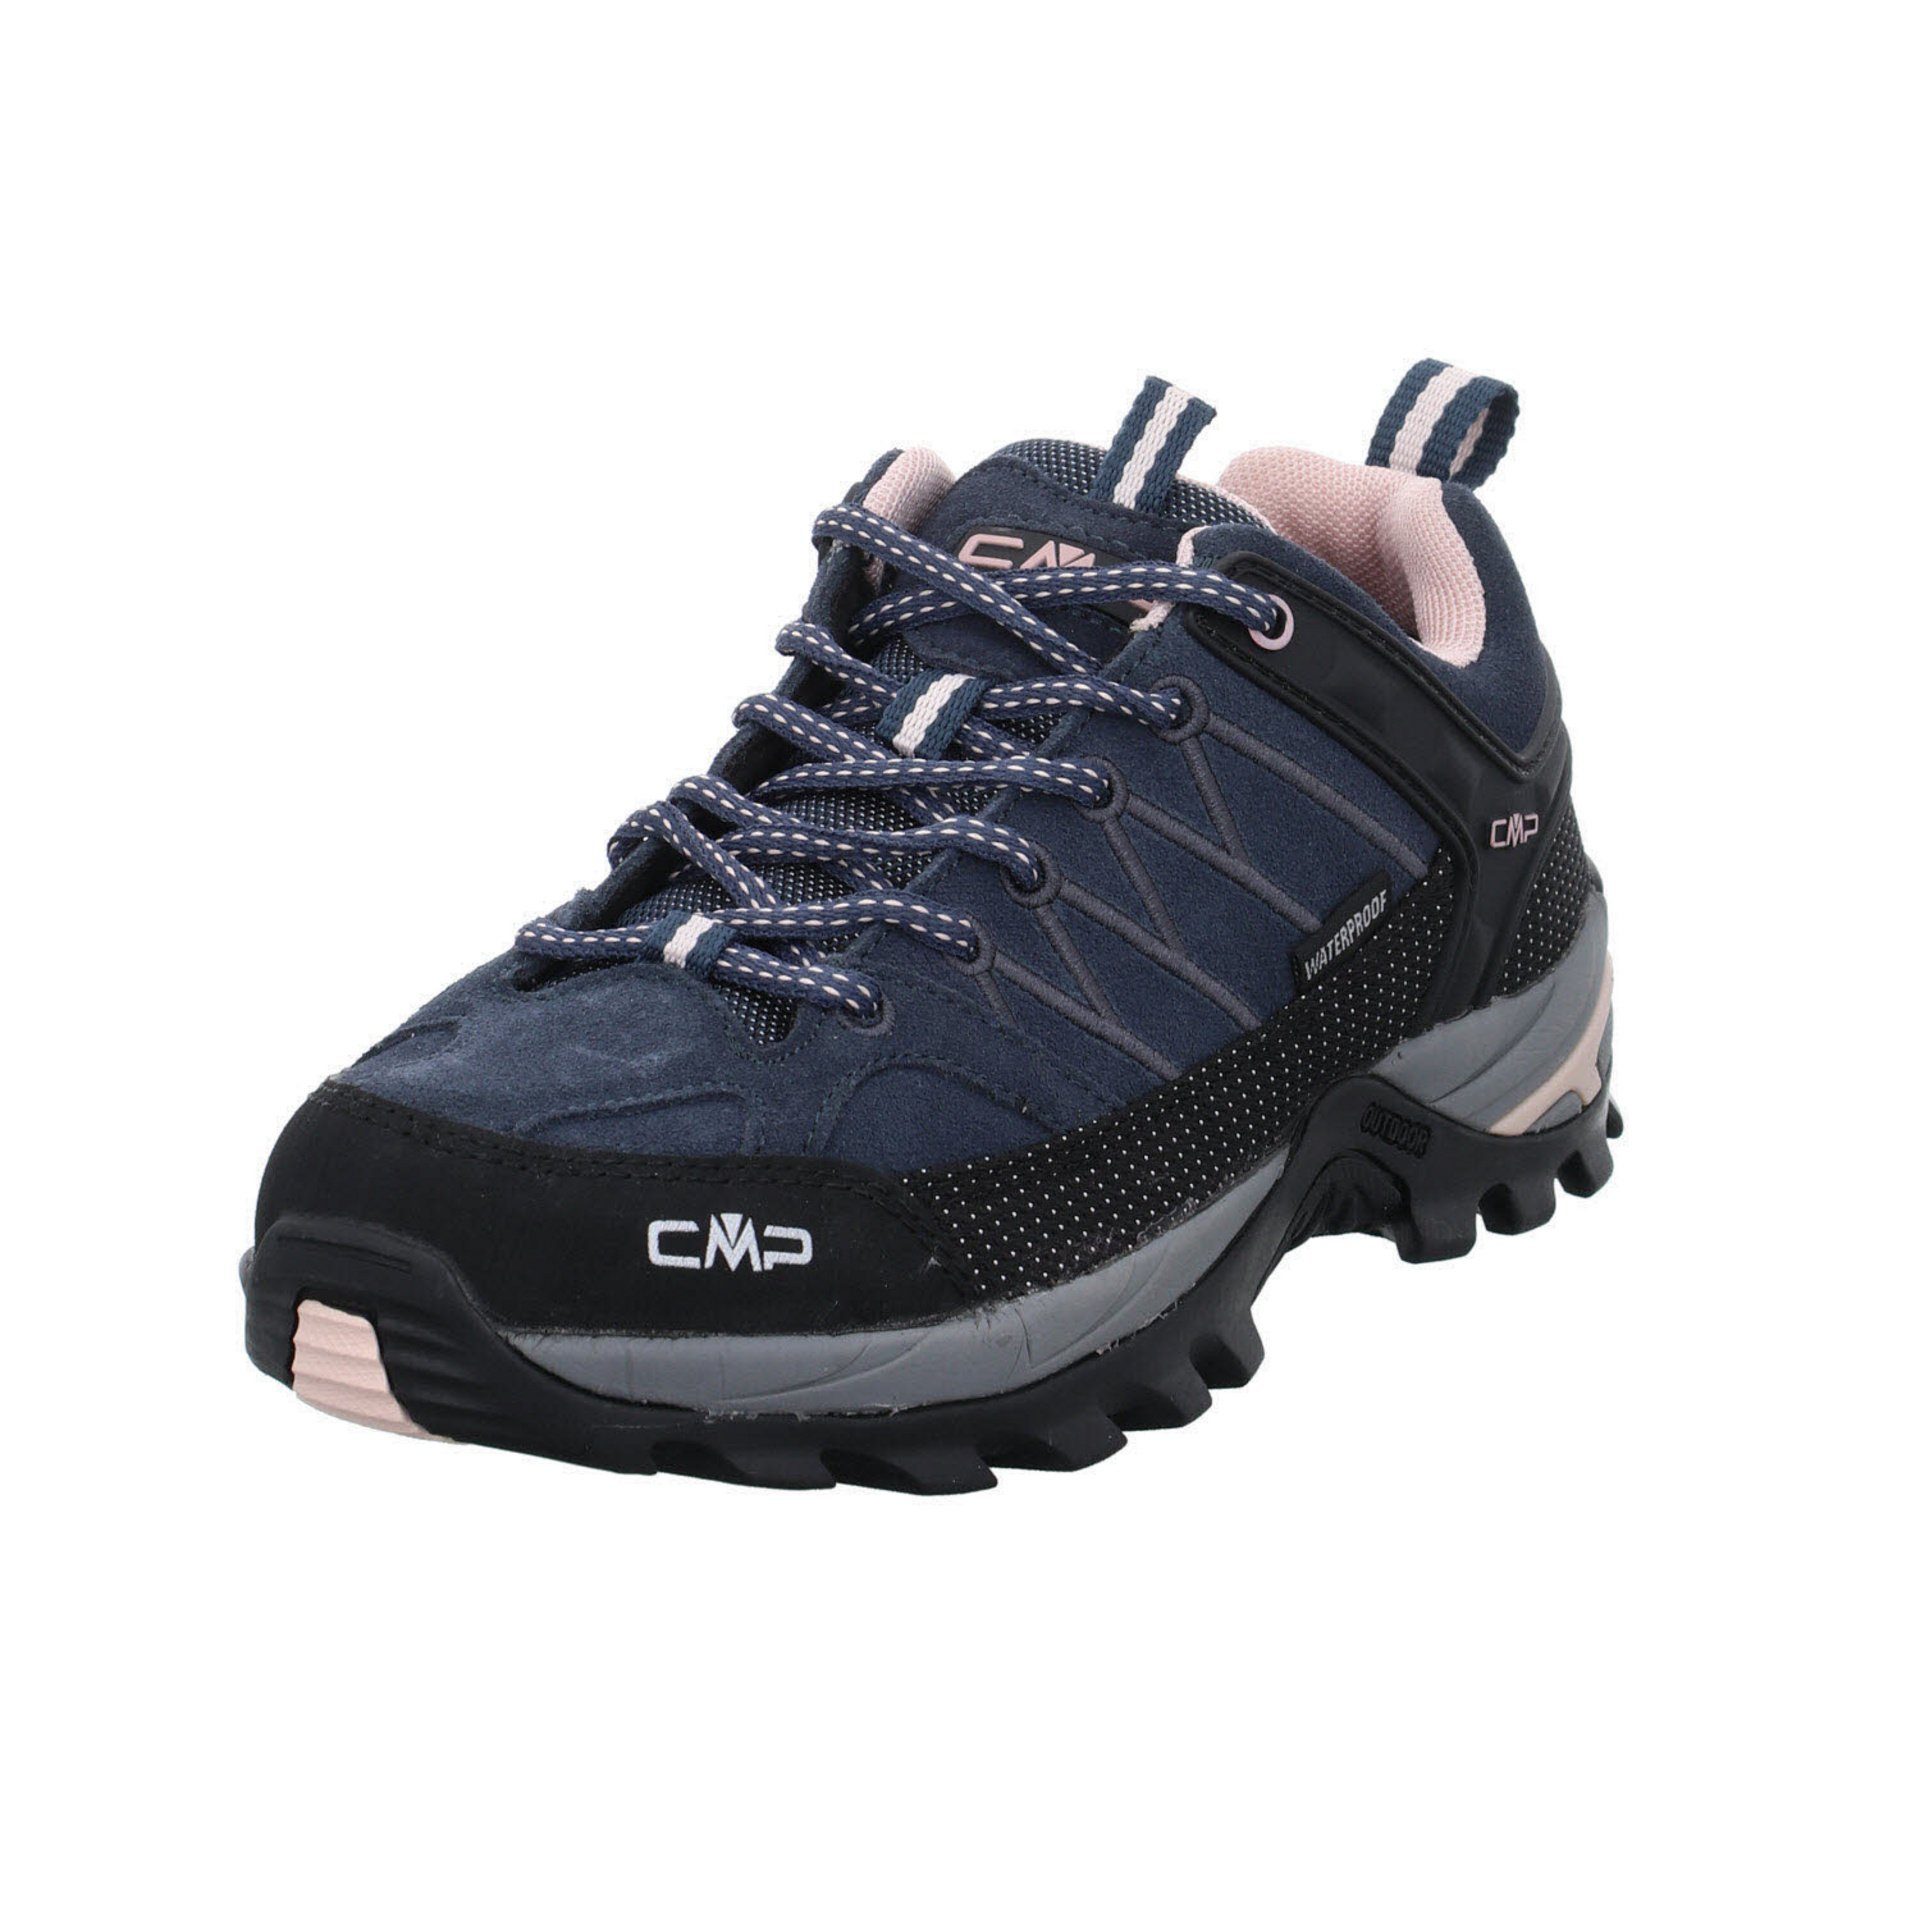 Riegel Outdoorschuh CMP Leder-/Textilkombination Damen (201) anthrazit Outdoorschuh Schuhe Low Outdoor